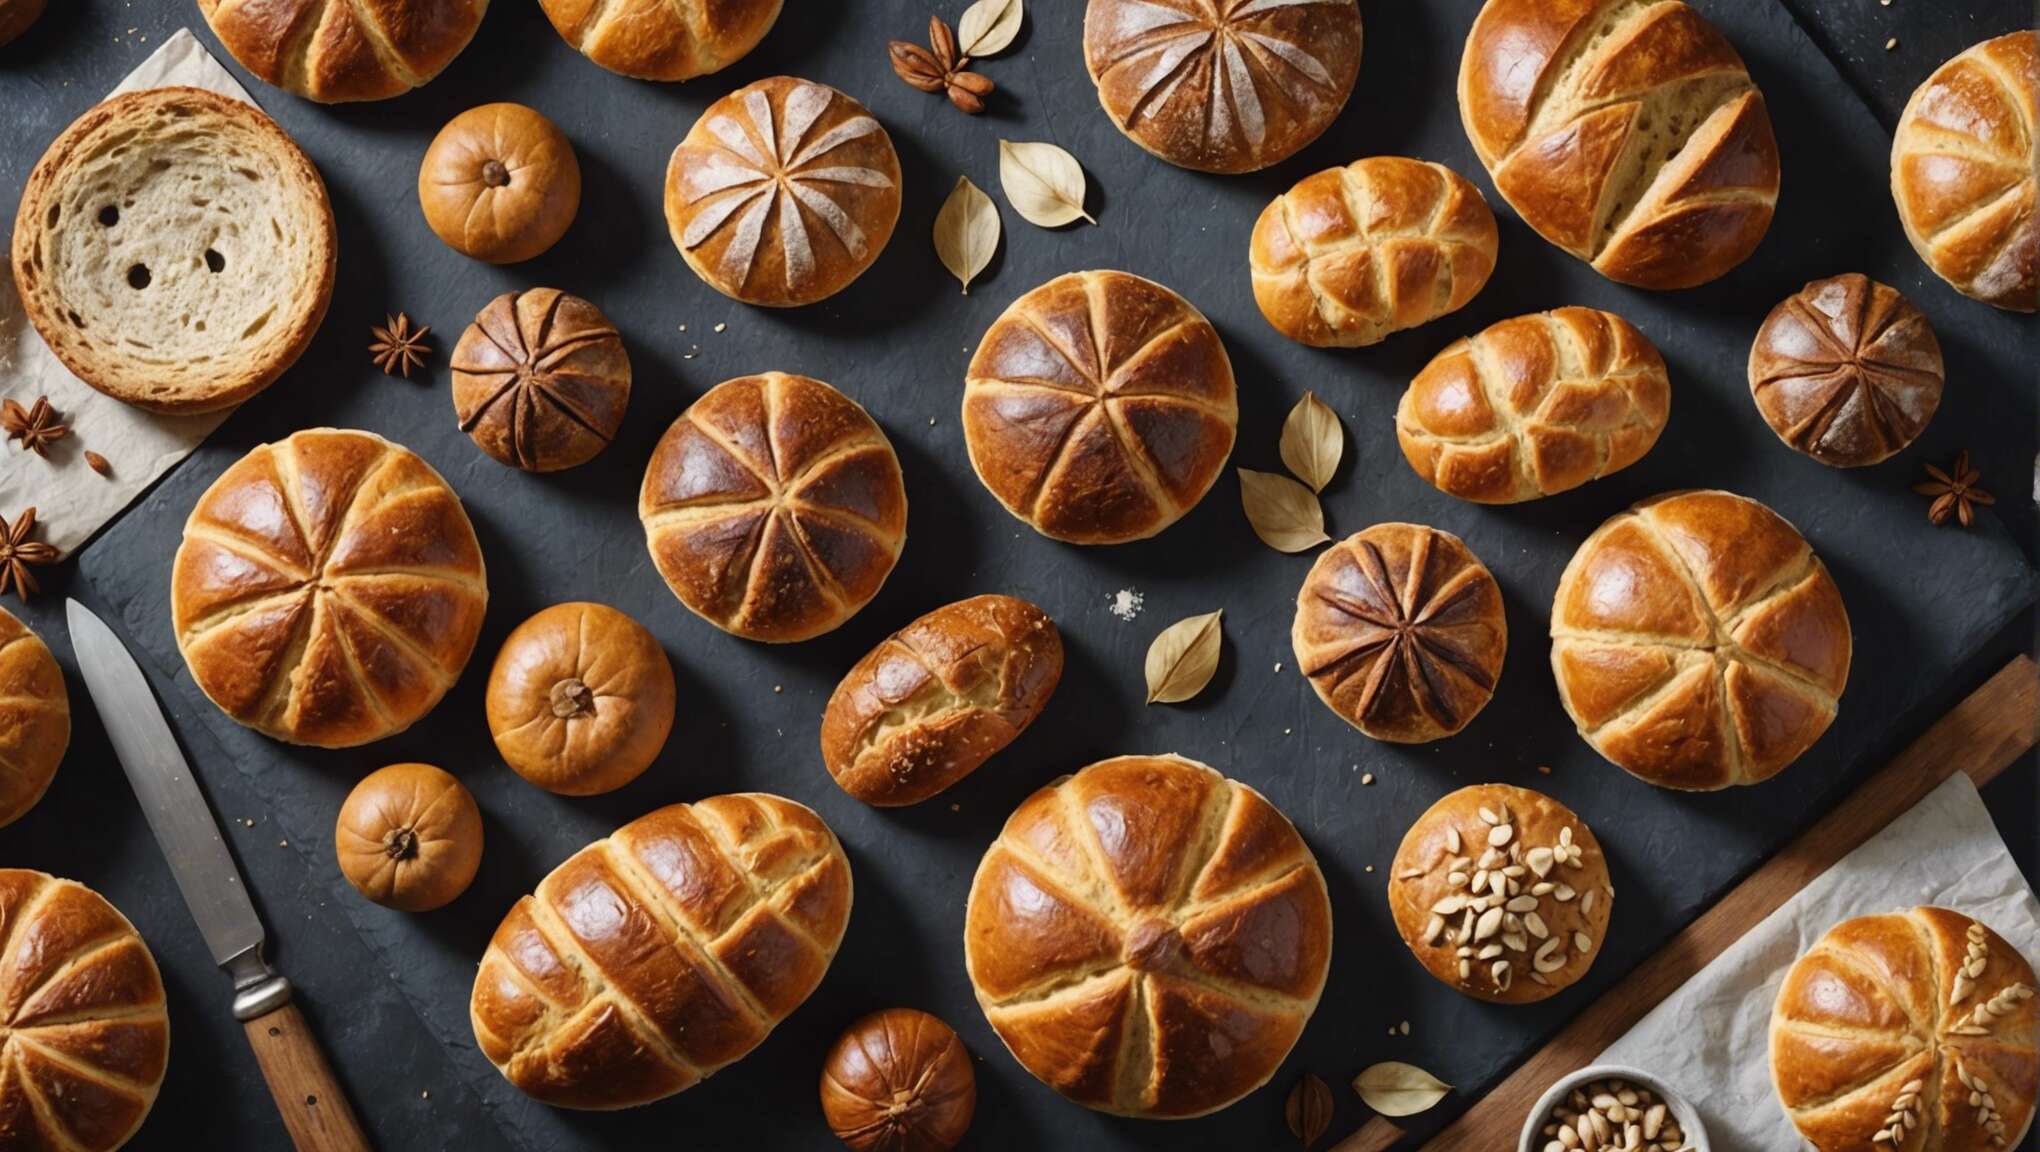 Atelier boulangerie chez soi : comment réaliser ces pains exotiques ?